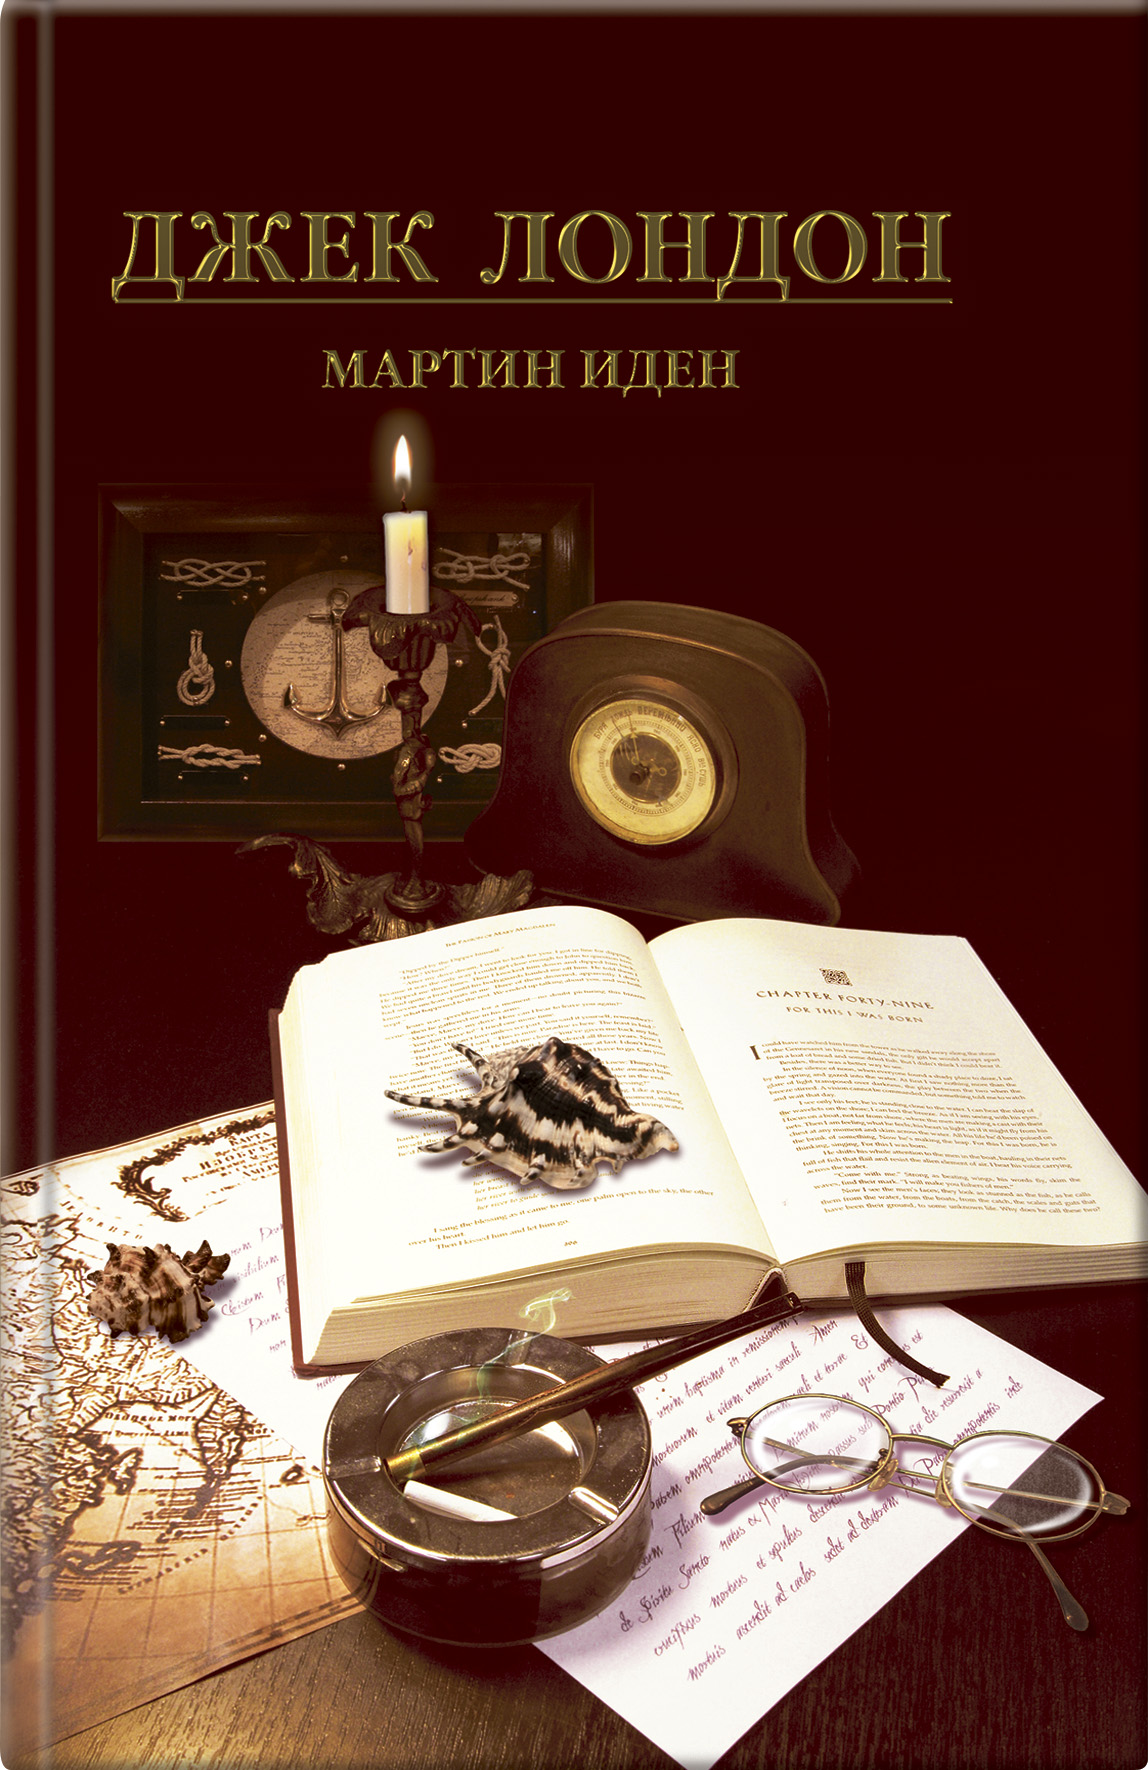 Книга Мартин Иден из серии , созданная Джек Лондон, может относится к жанру Литература 20 века, Зарубежная классика. Стоимость электронной книги Мартин Иден с идентификатором 9064892 составляет 78.00 руб.